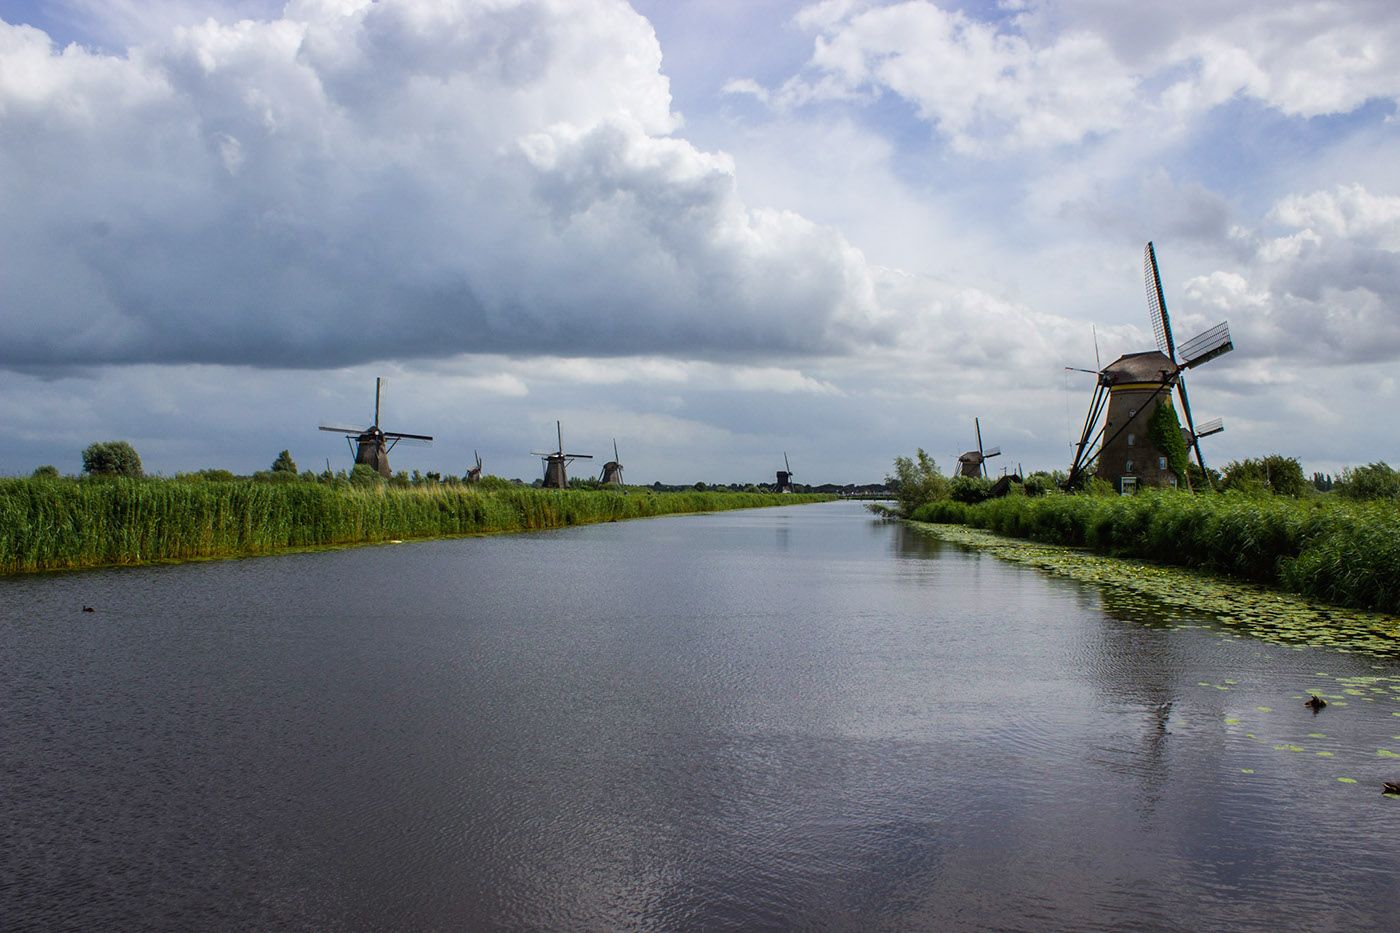 amsterdam kinderdijk broekinwaterland Rotterdam Haarlem Netherlands Volendam Marken Enkhuizen delft